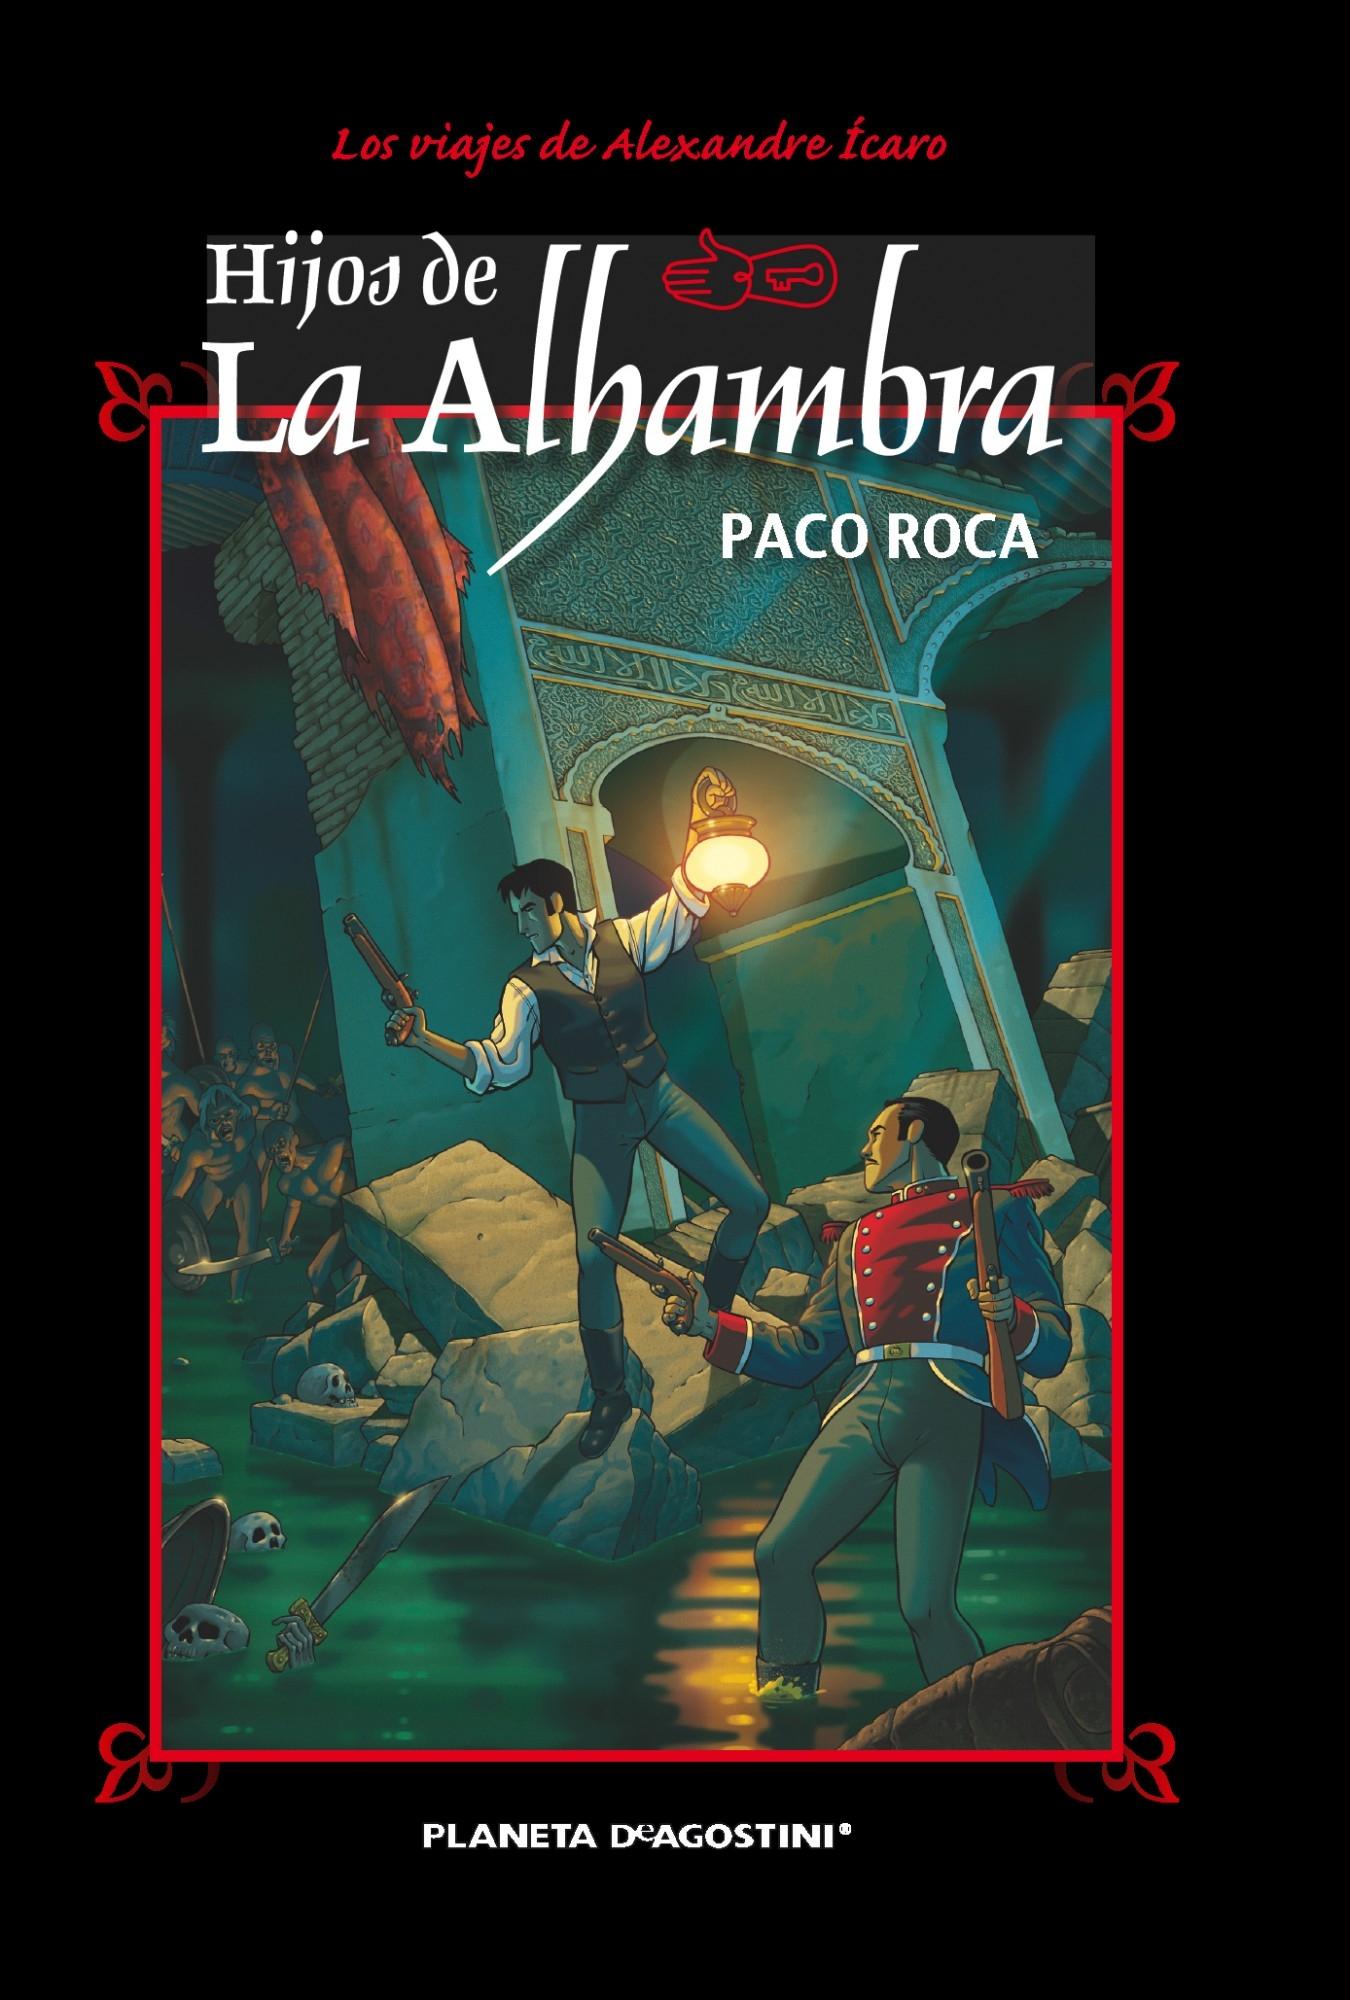 Hijos de la Alhambra (Nueva edición) "Aventuras de Alexander Ícaro"